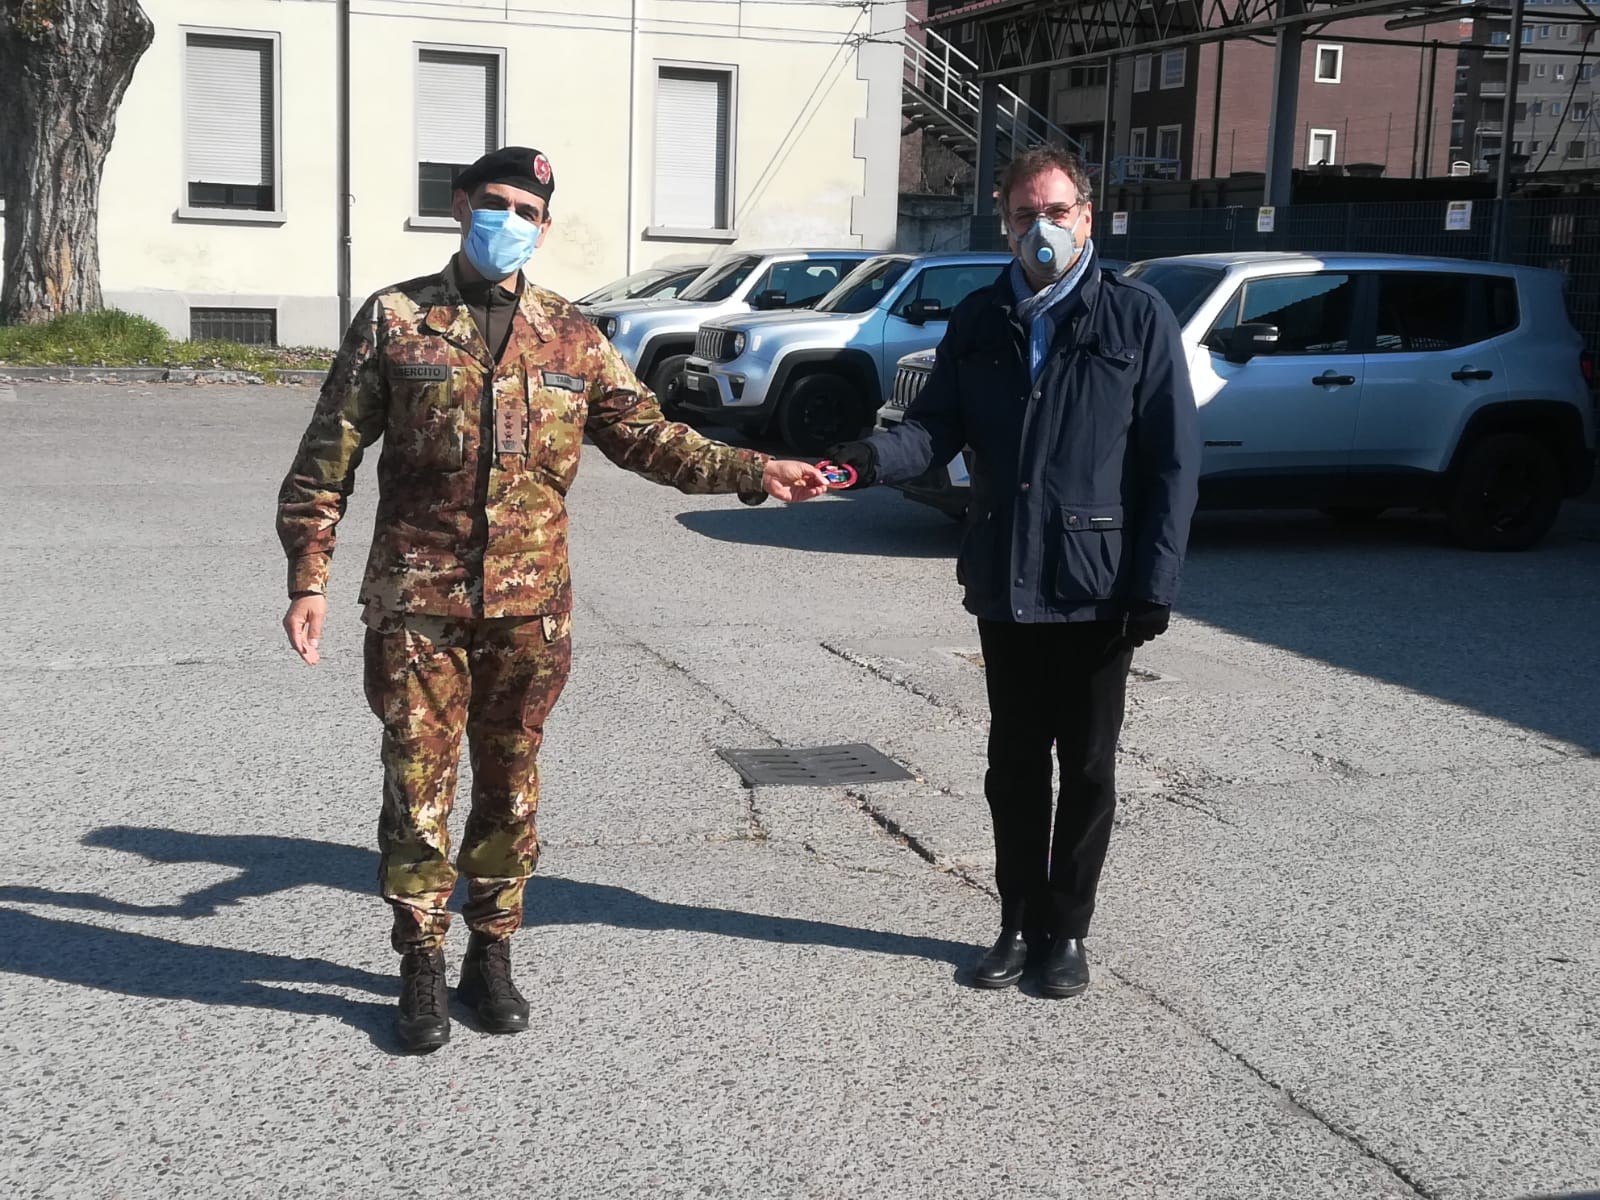 Mascherine chirurgiche donate all'Esercito Italiano impegnate nell'operazione strade sicure Milano